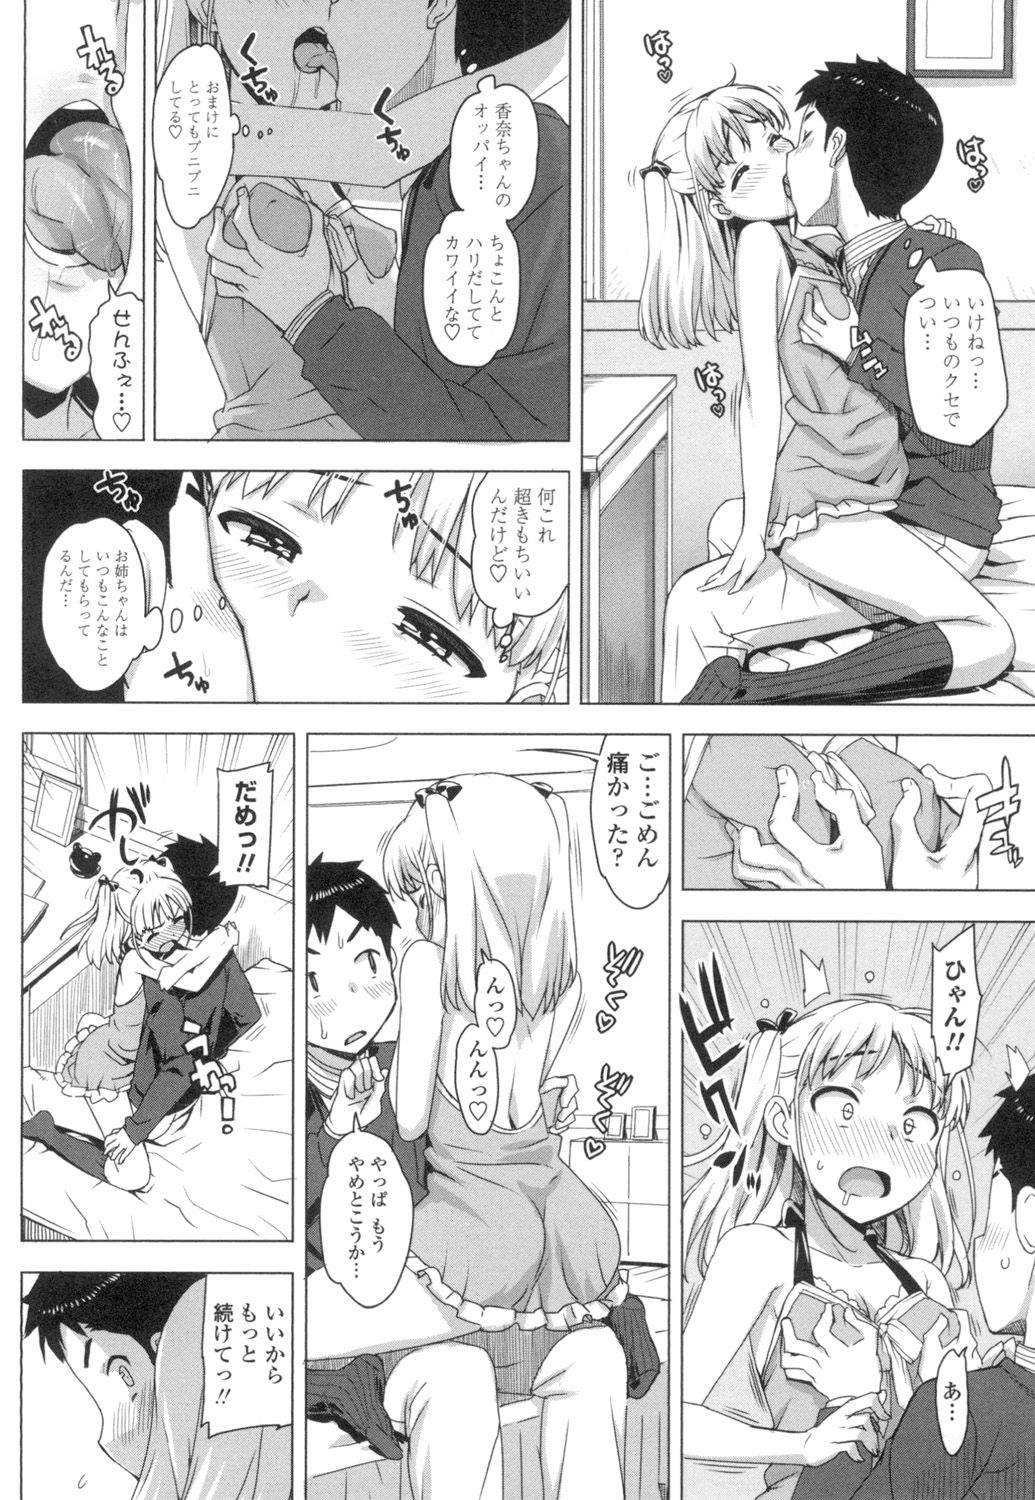 [Ohtomo Takuji] Katekano♡ [Digital] page 39 full